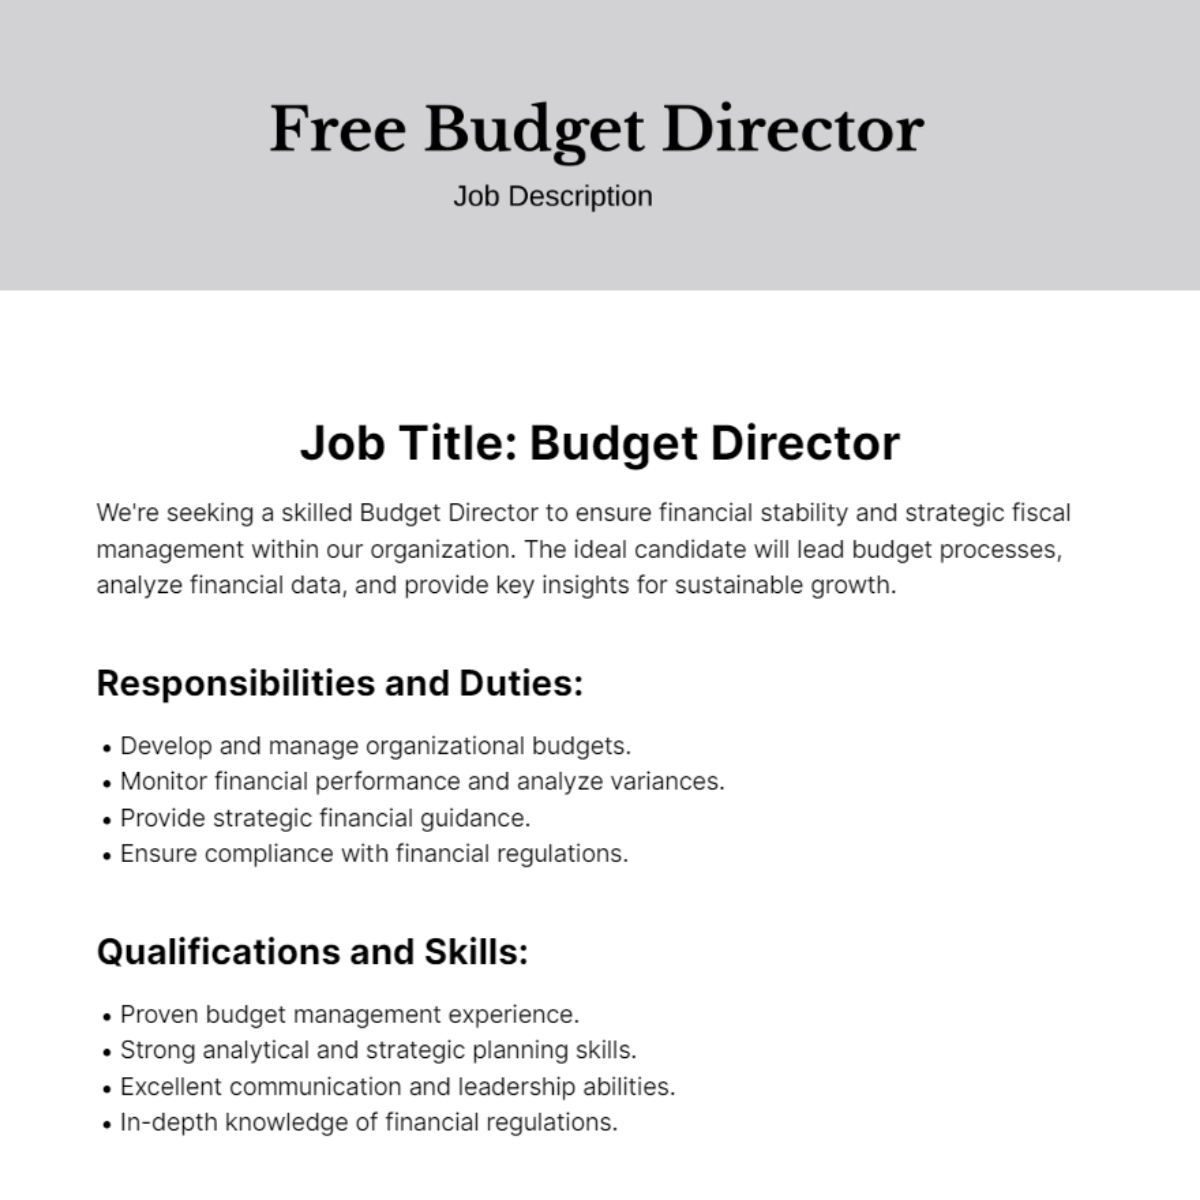 Budget Director Job Description Template